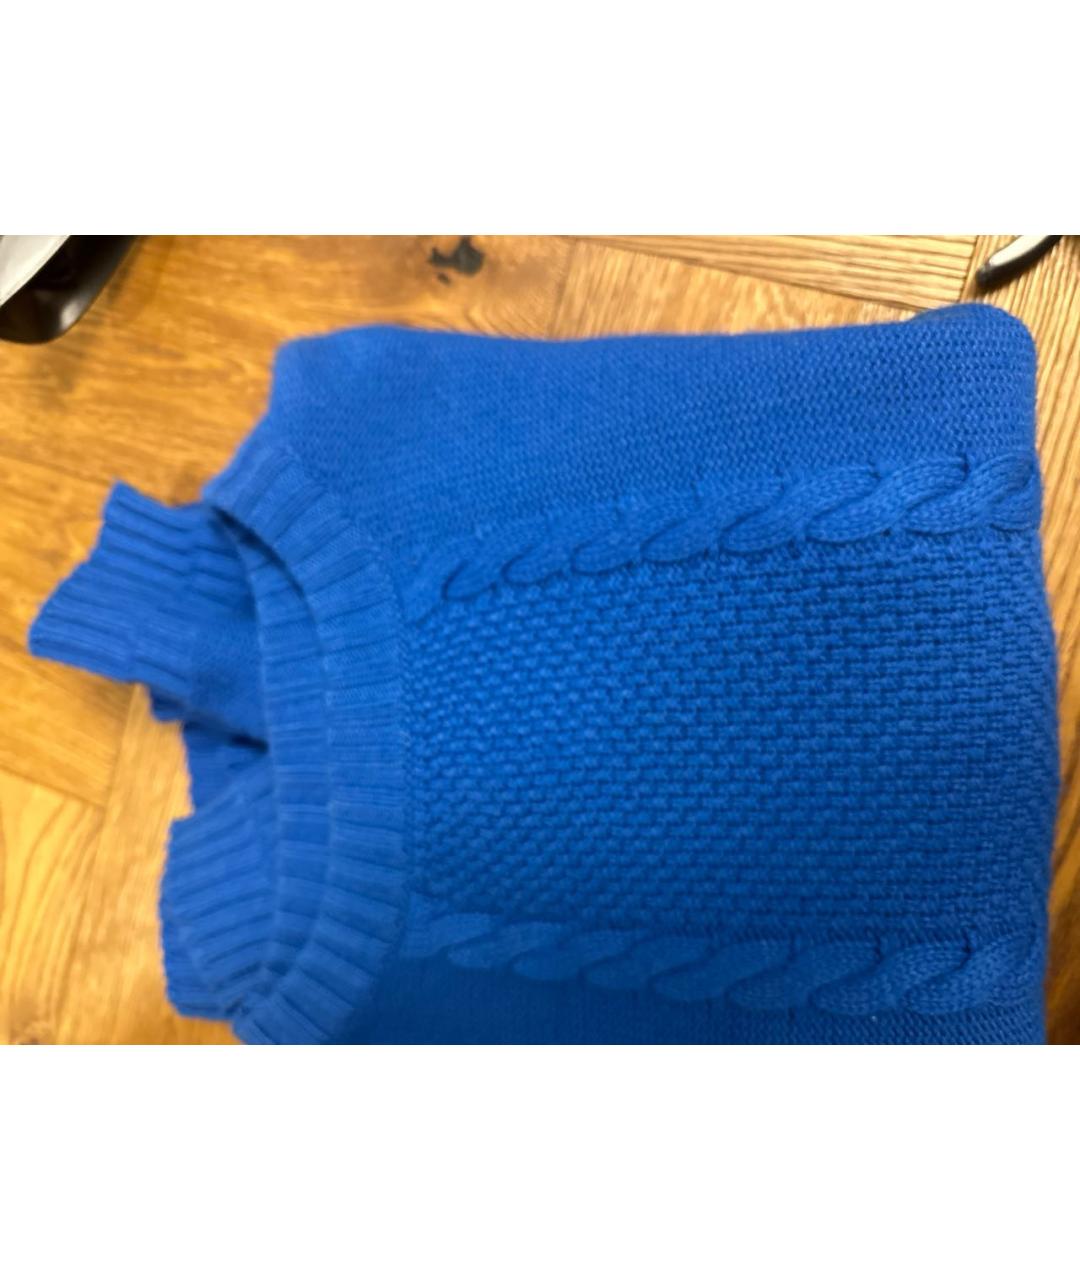 HERMES PRE-OWNED Синий кашемировый джемпер / свитер, фото 4